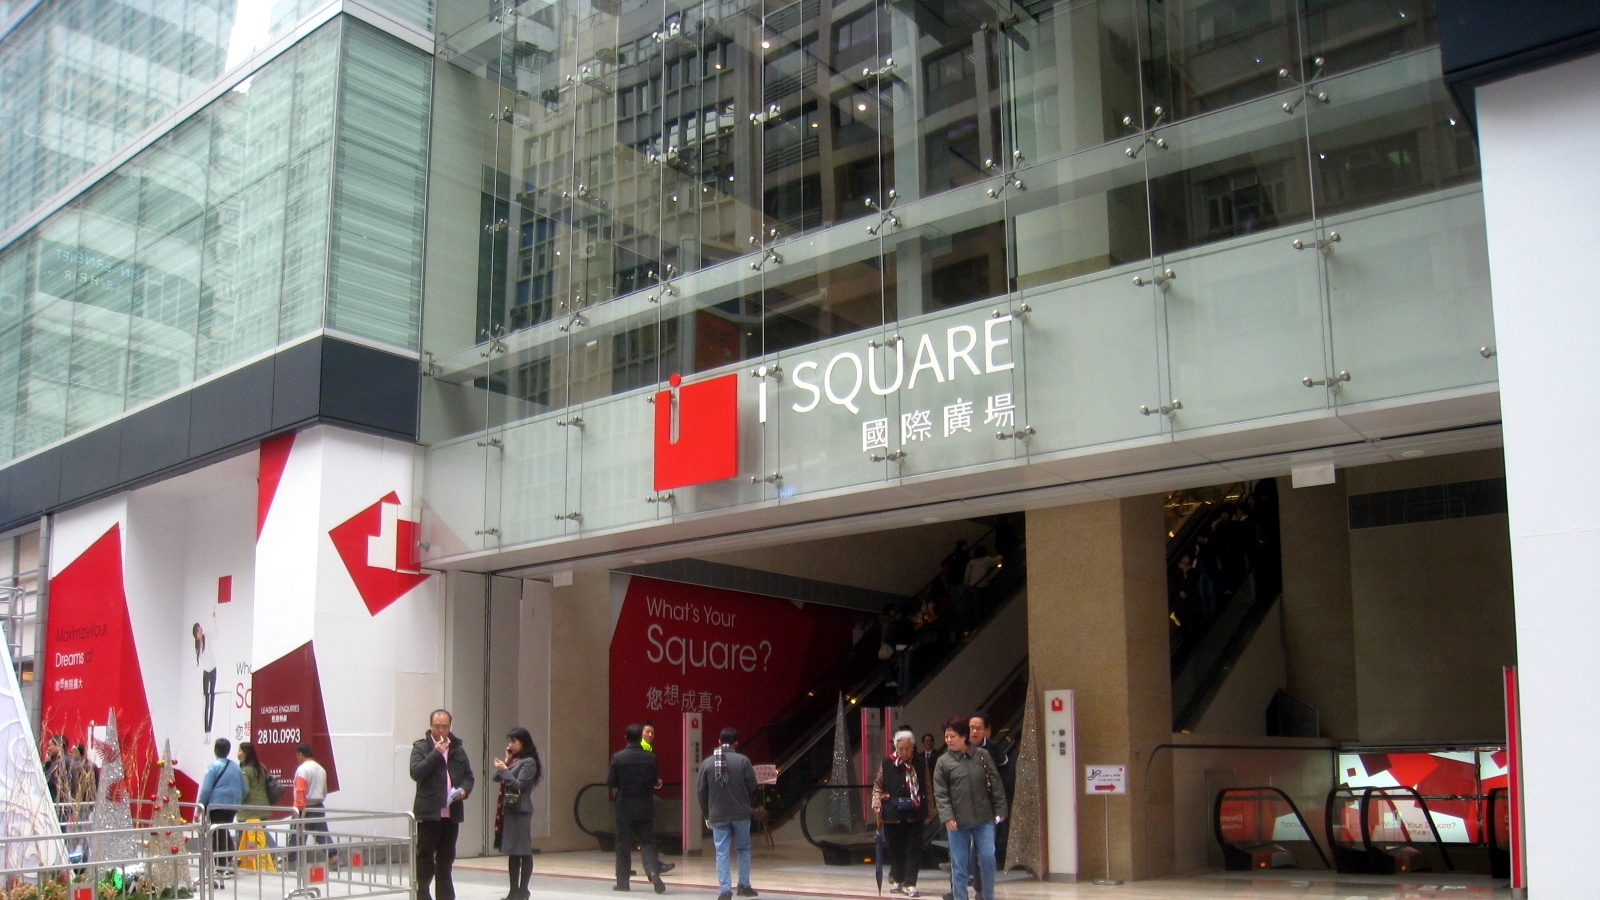 Luxstate - Real Estate - Retail - Hong Kong - Kowloon - Tsim Sha Tsui - iSQUARE 國際廣場 (1).jpg